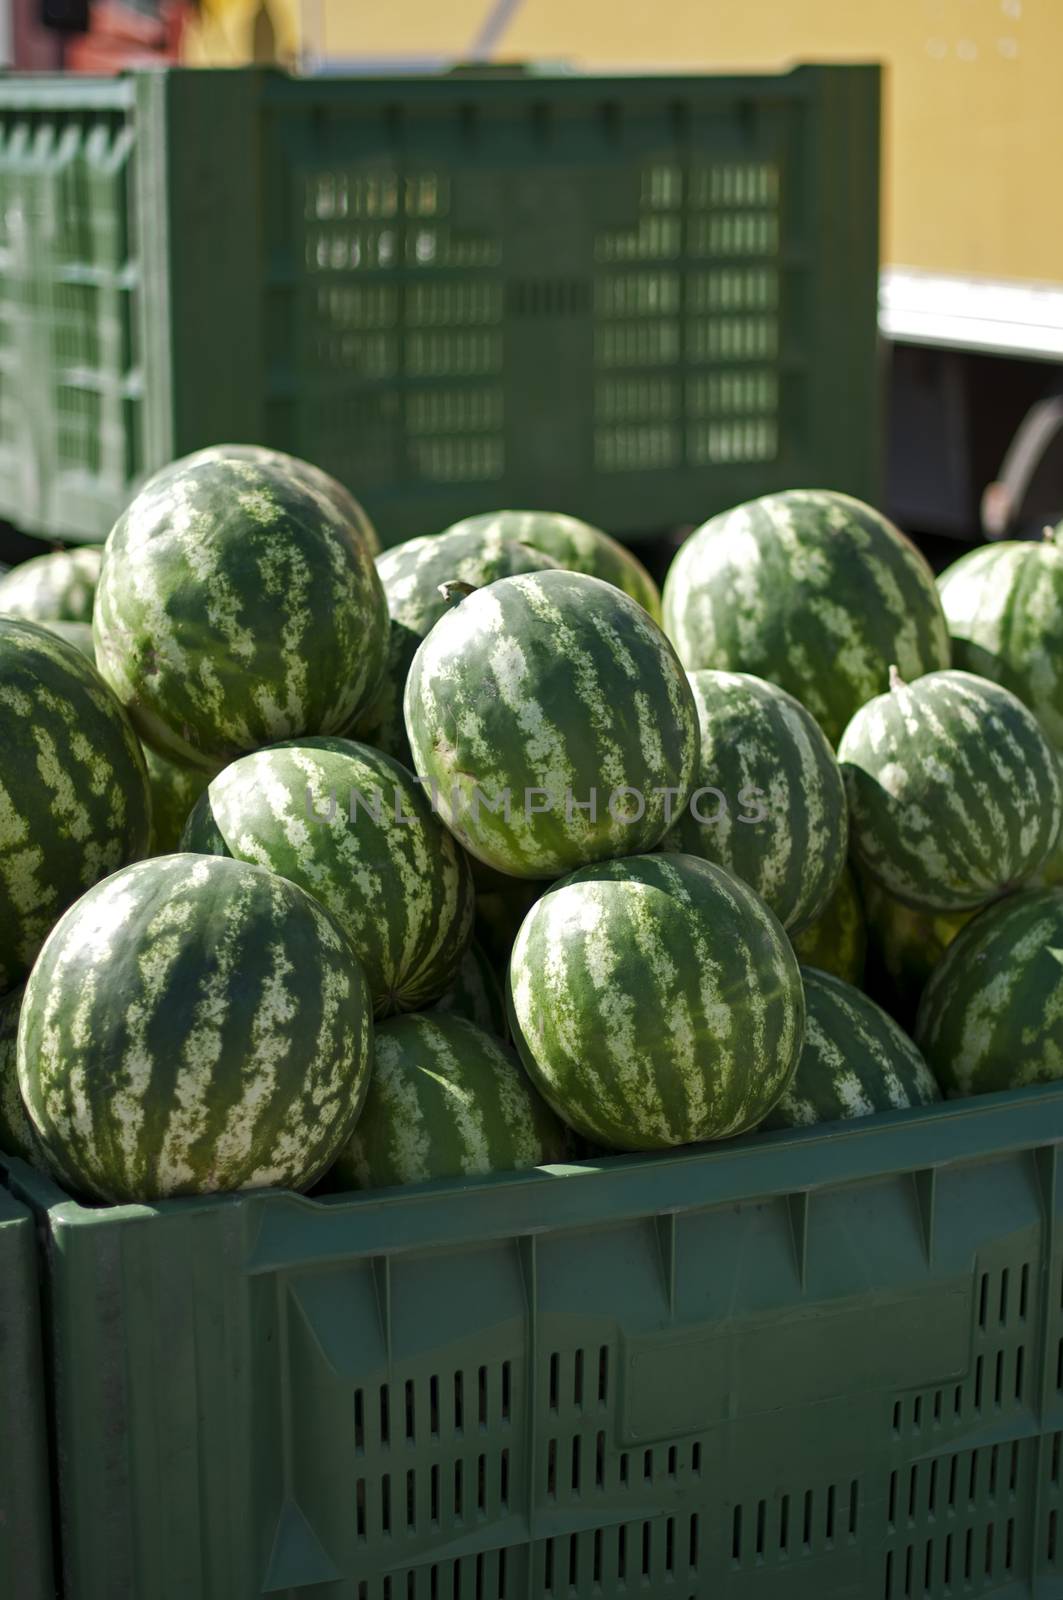 Watermelons in large crates by deyan_georgiev